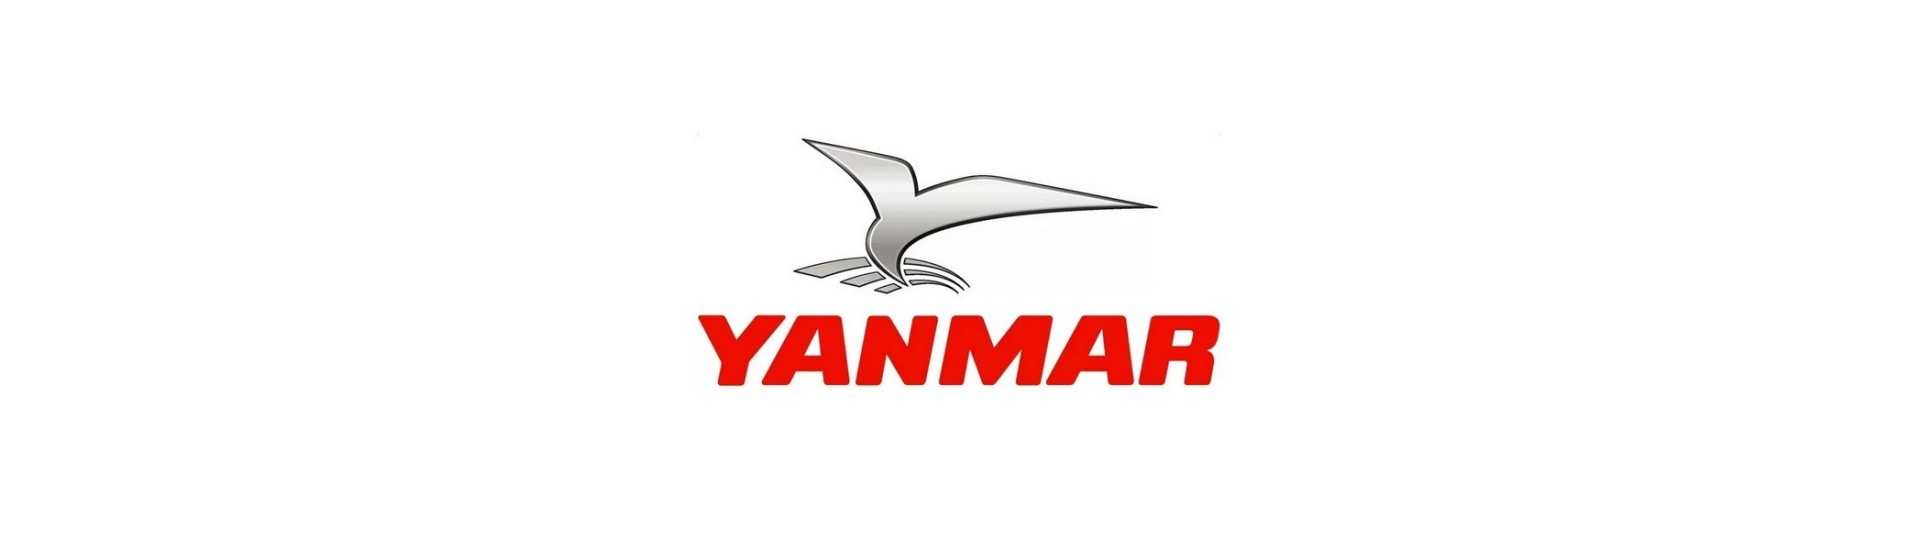 Preriscaldamento candela al miglior prezzo auto senza permesso Yanmar